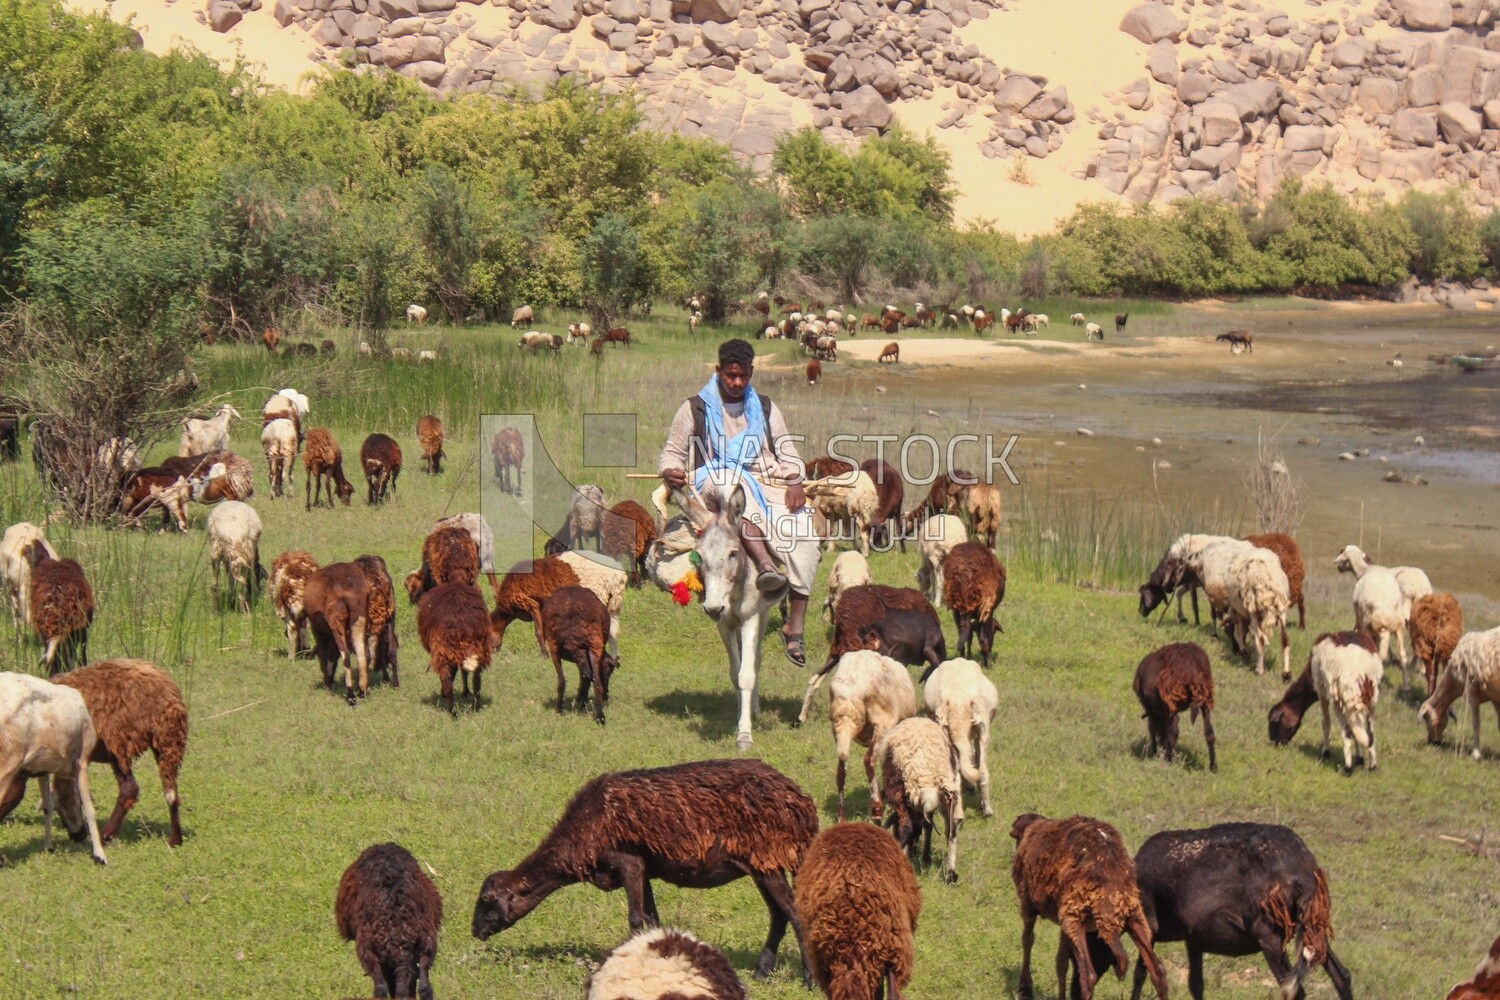 Raising livestock, herding sheep